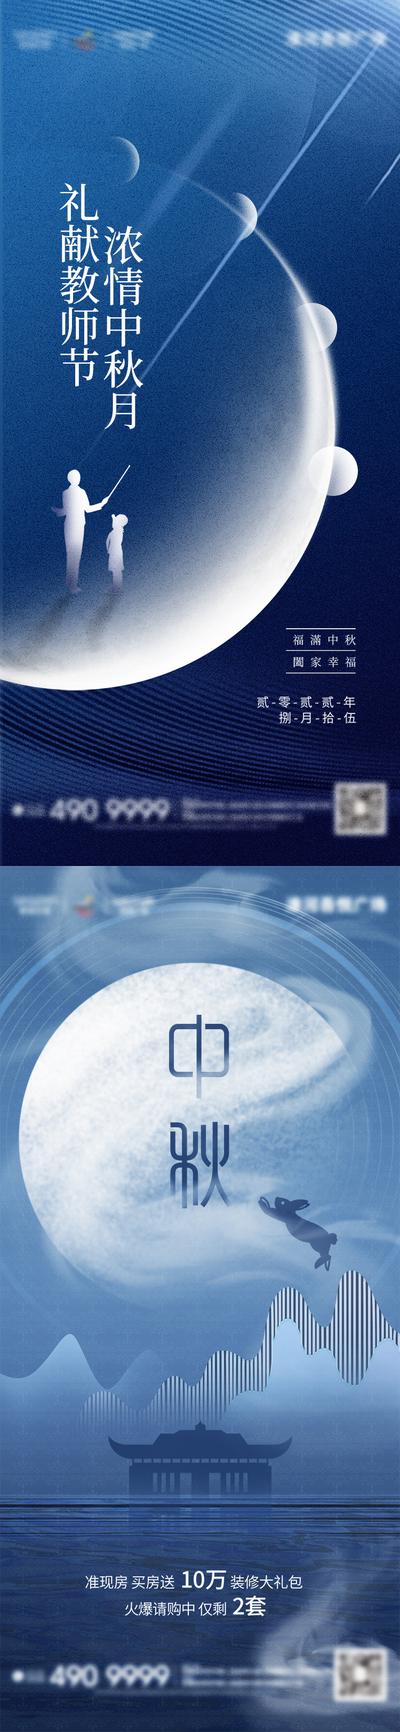 南门网 广告 海报 节日 中秋 教师节 兔子 满月 系列 品质